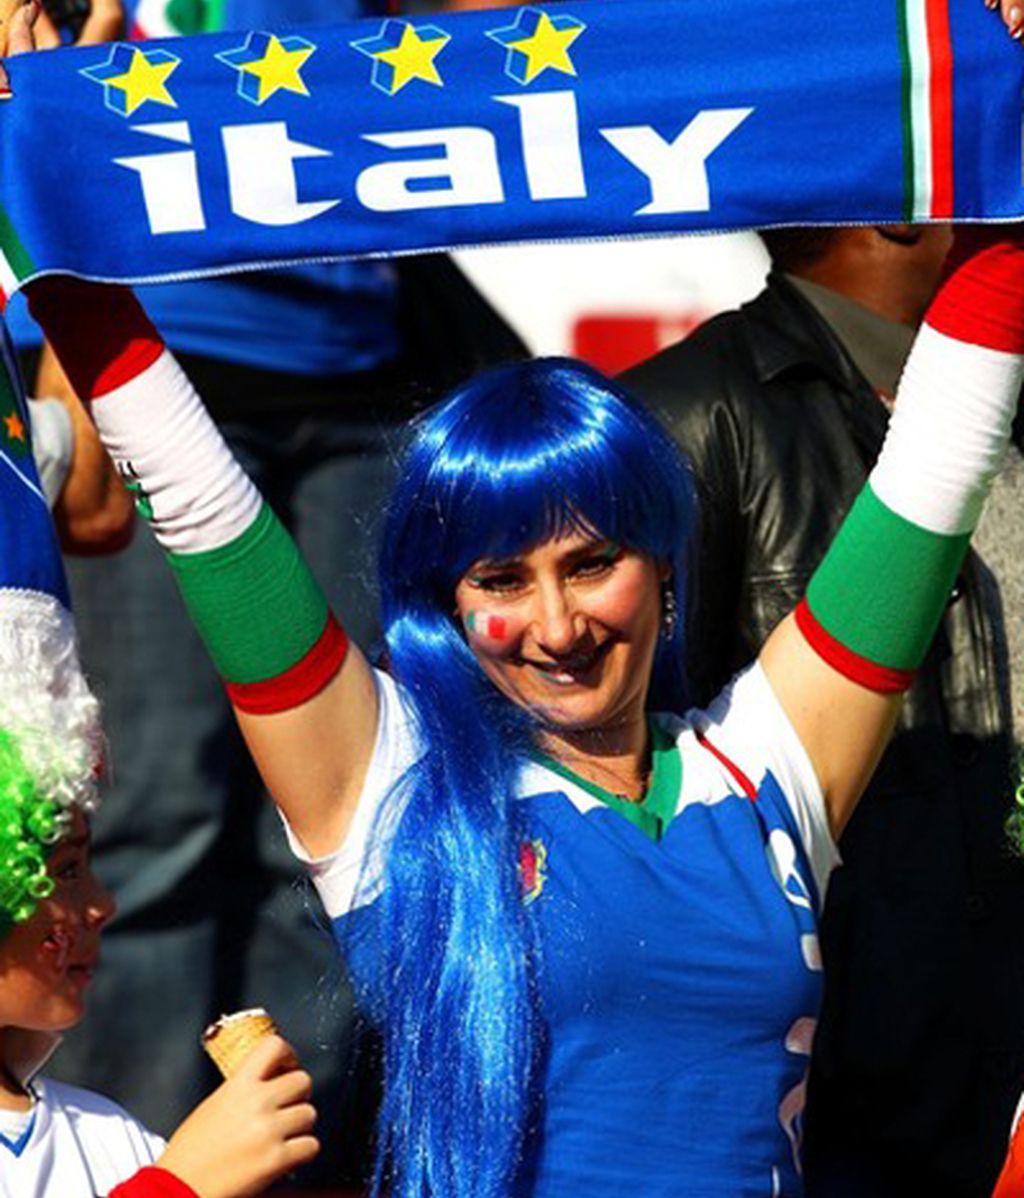 Italia se juega su prestigio